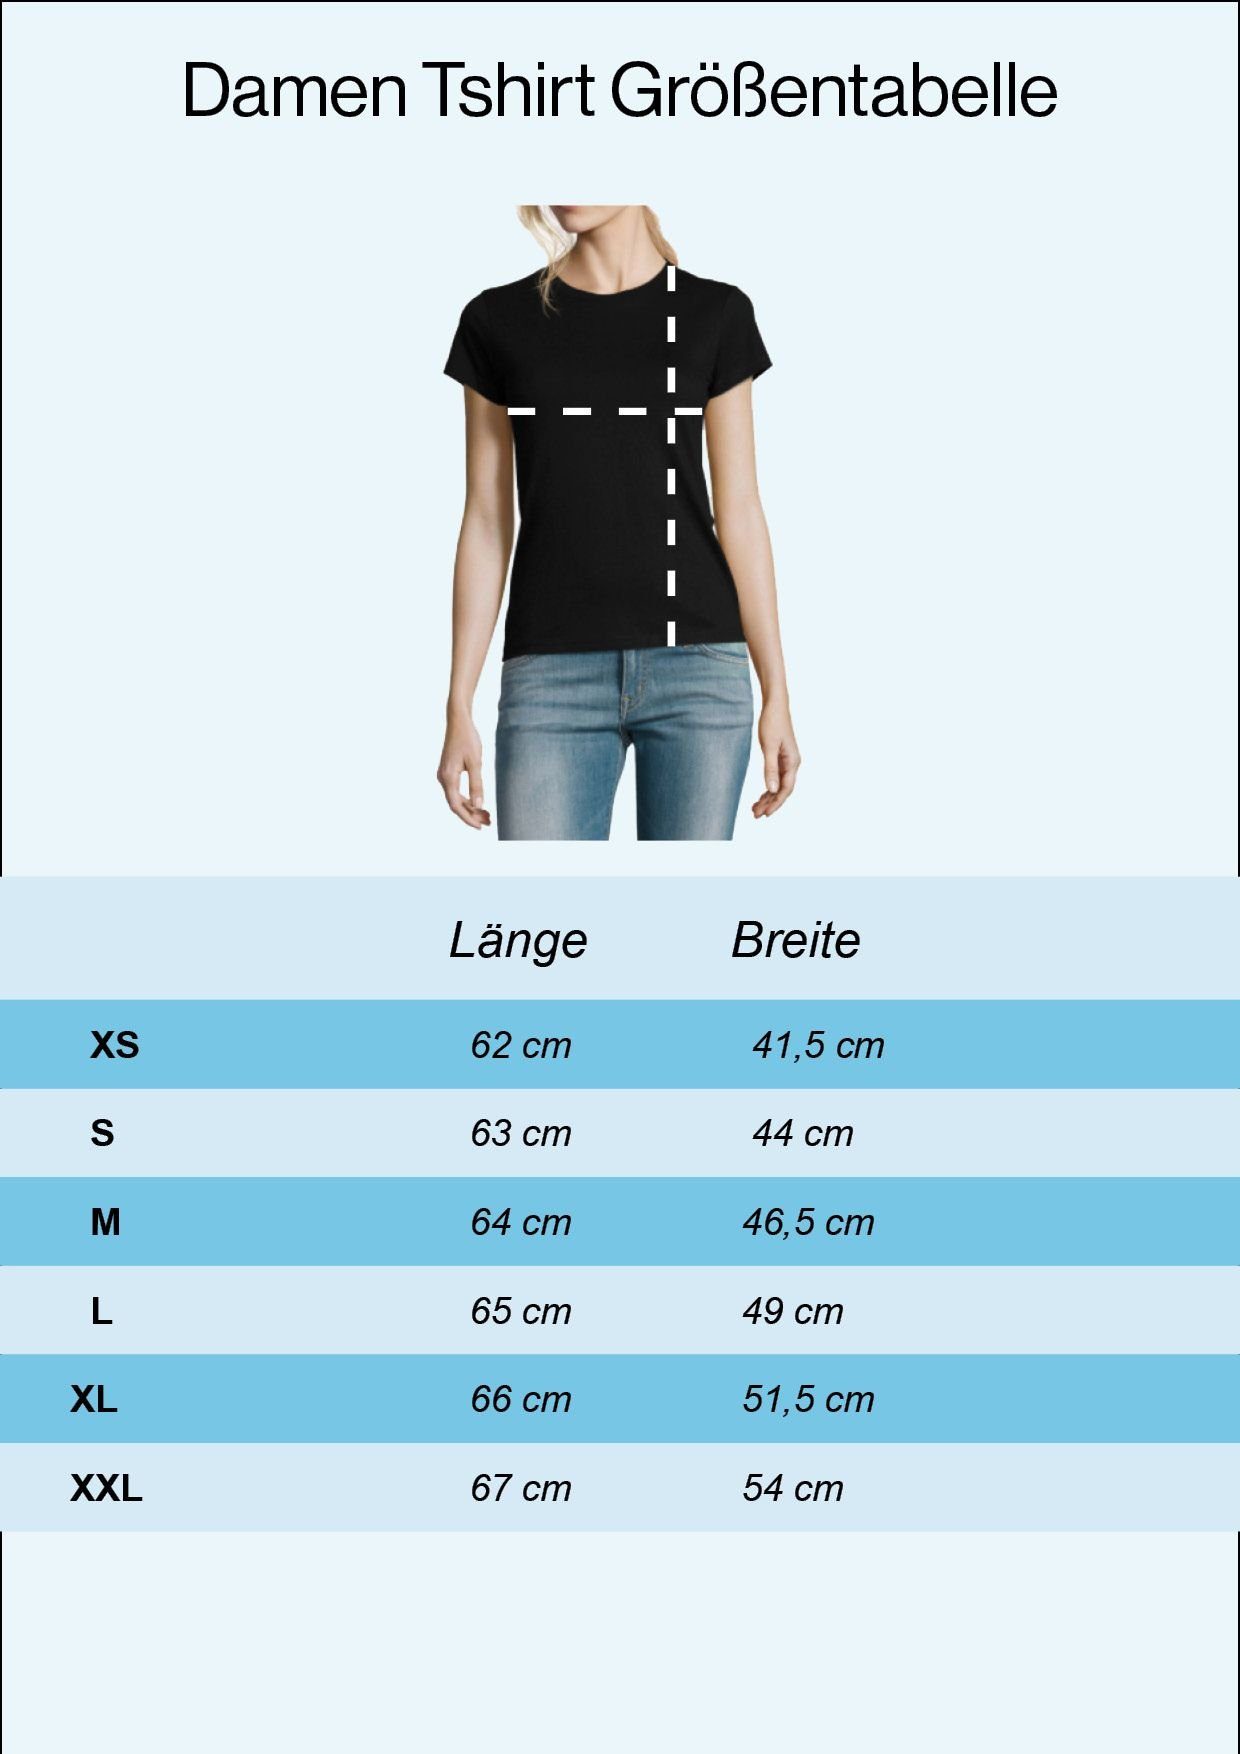 Youth Designz T-Shirt Fun-Look Rock'n'Roll modischem Hand Damen Horror Shirt Skelett Print Mit Navy im